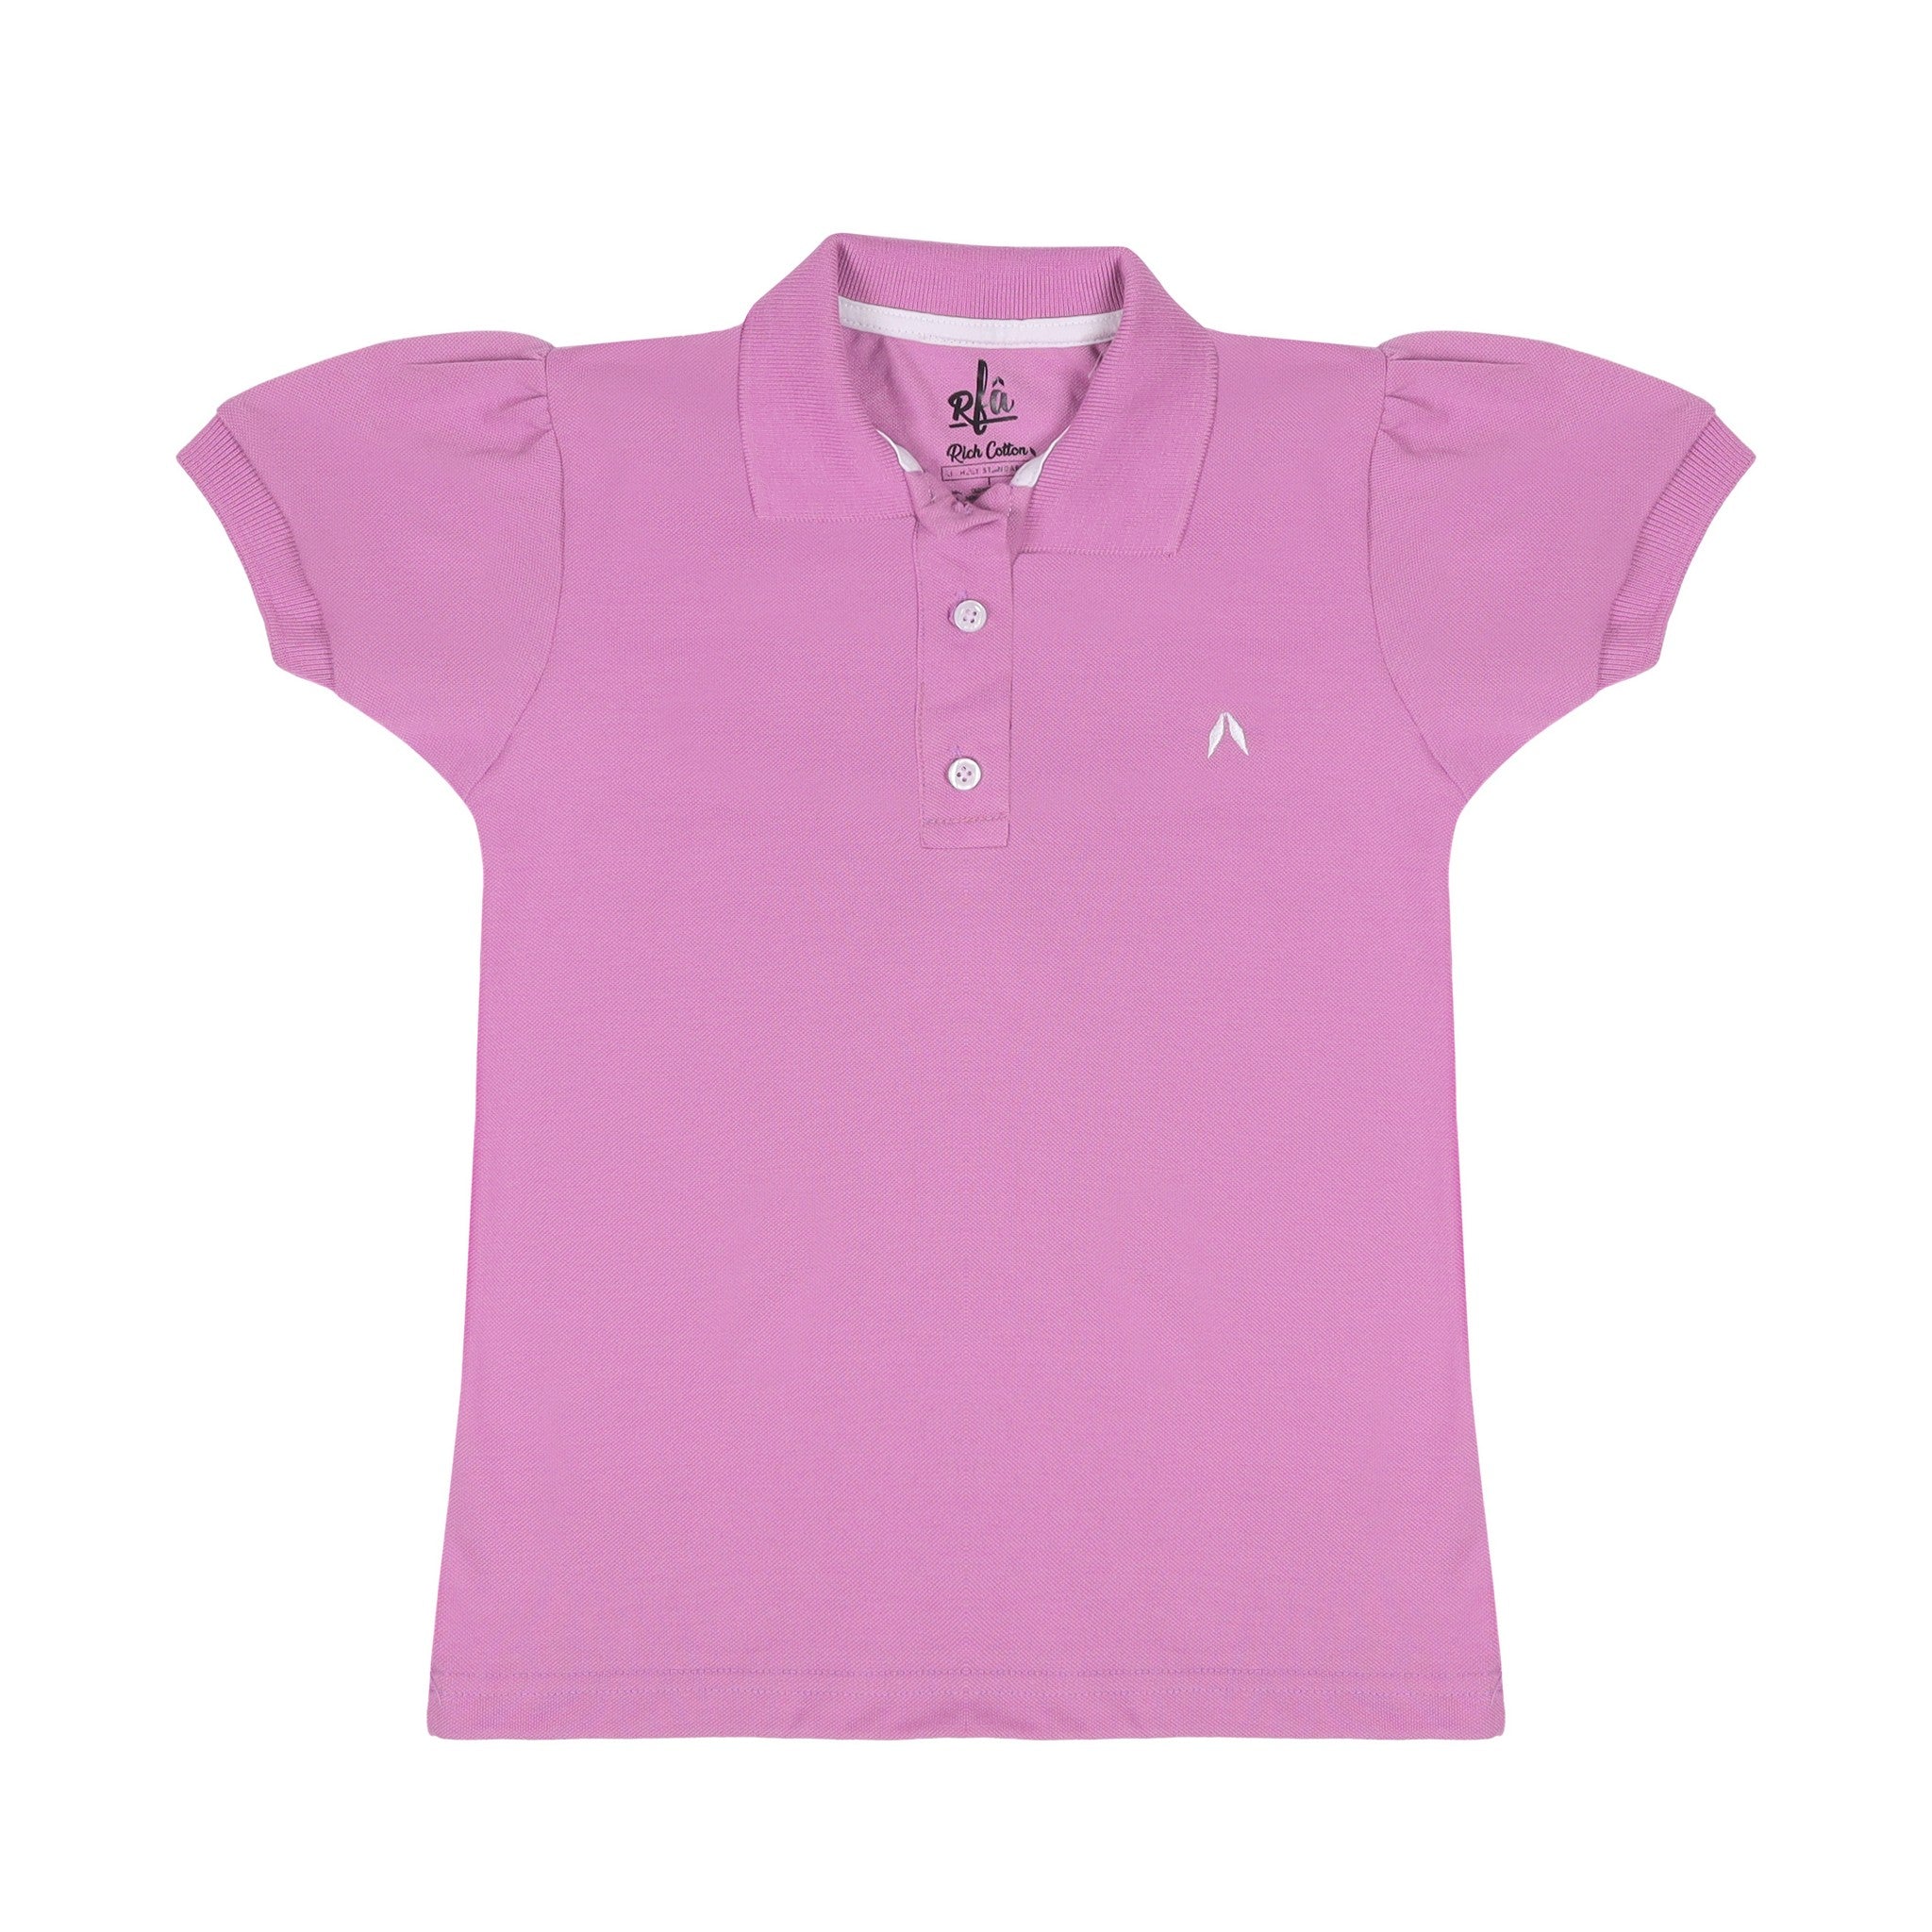 Purple Polo Shirt